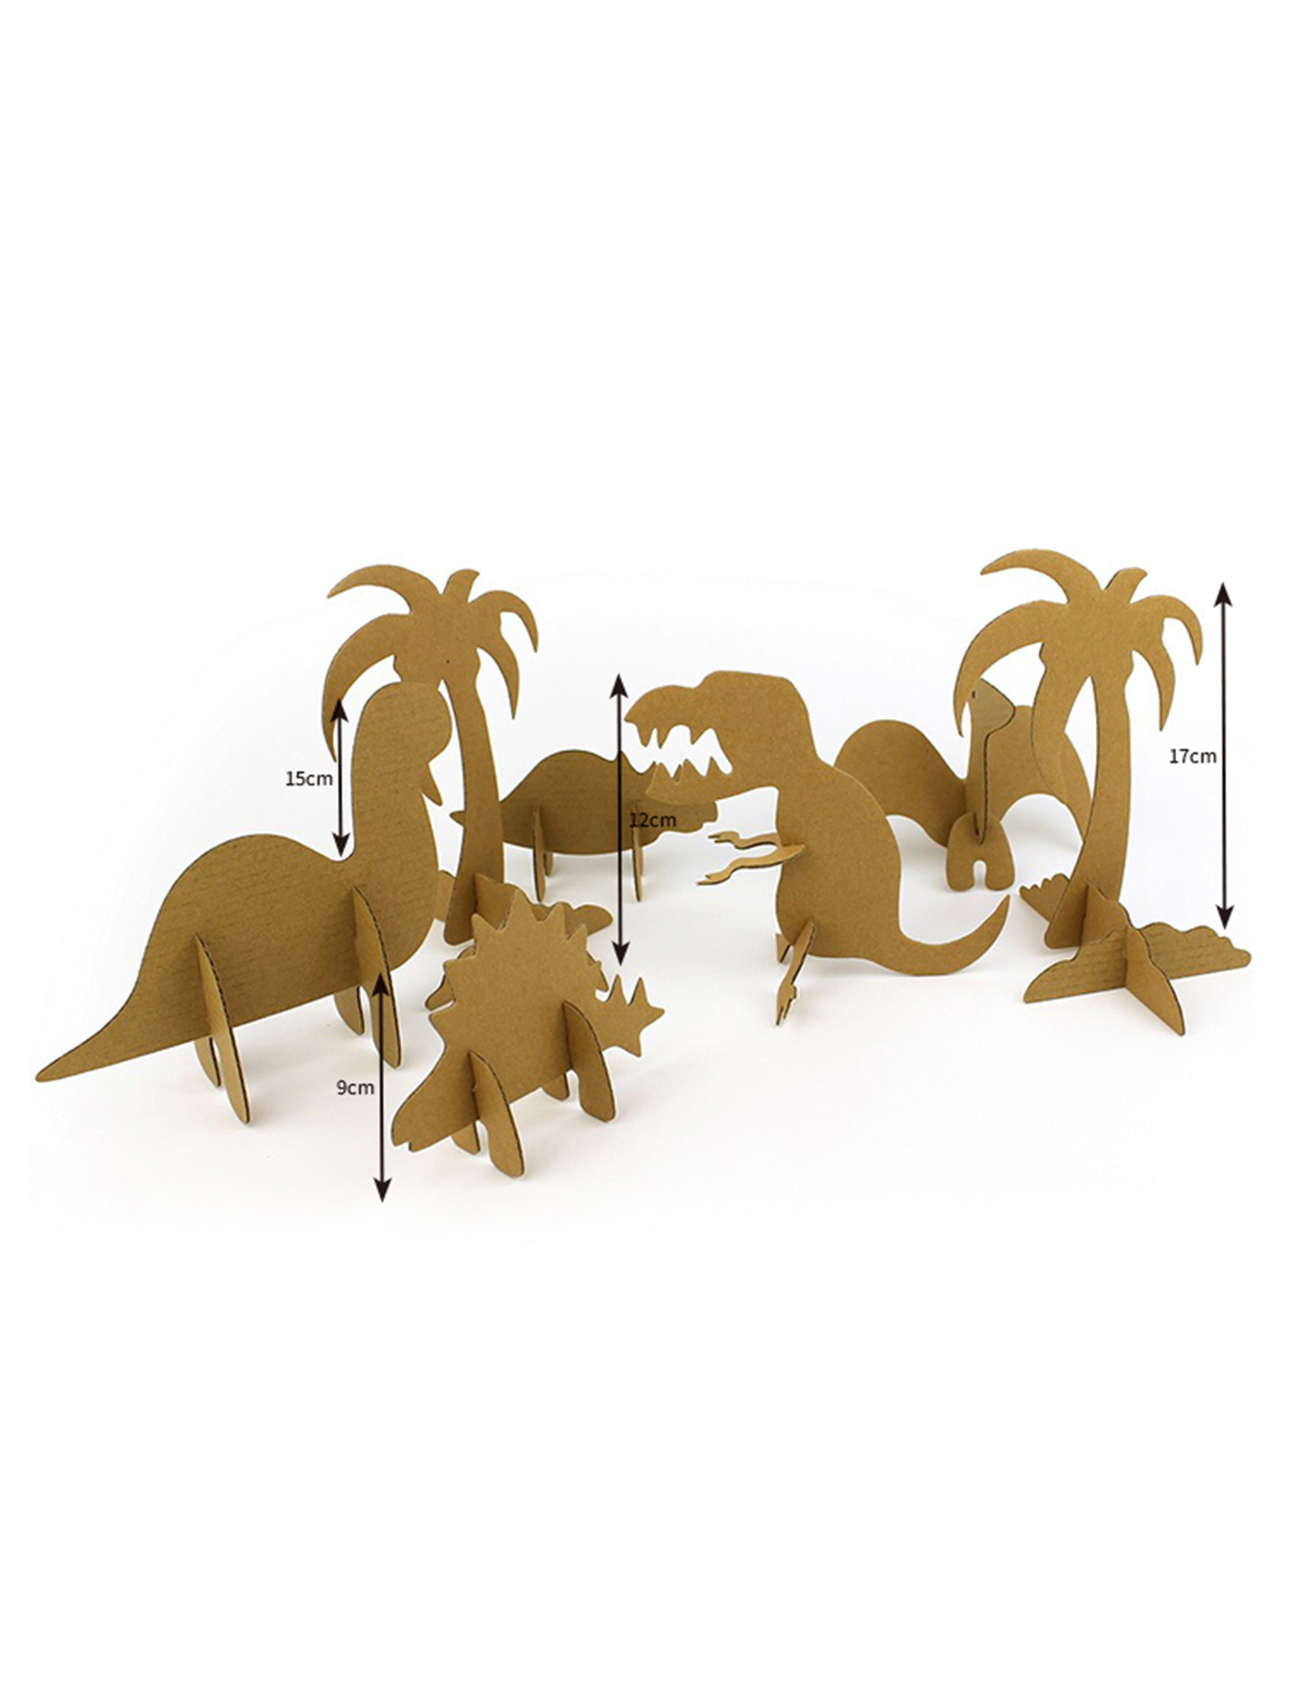 Dinosaur andiany 3D Puzzle Paper Model Ho an'ny ankizy mivory sy manao doodling CG131 (3)